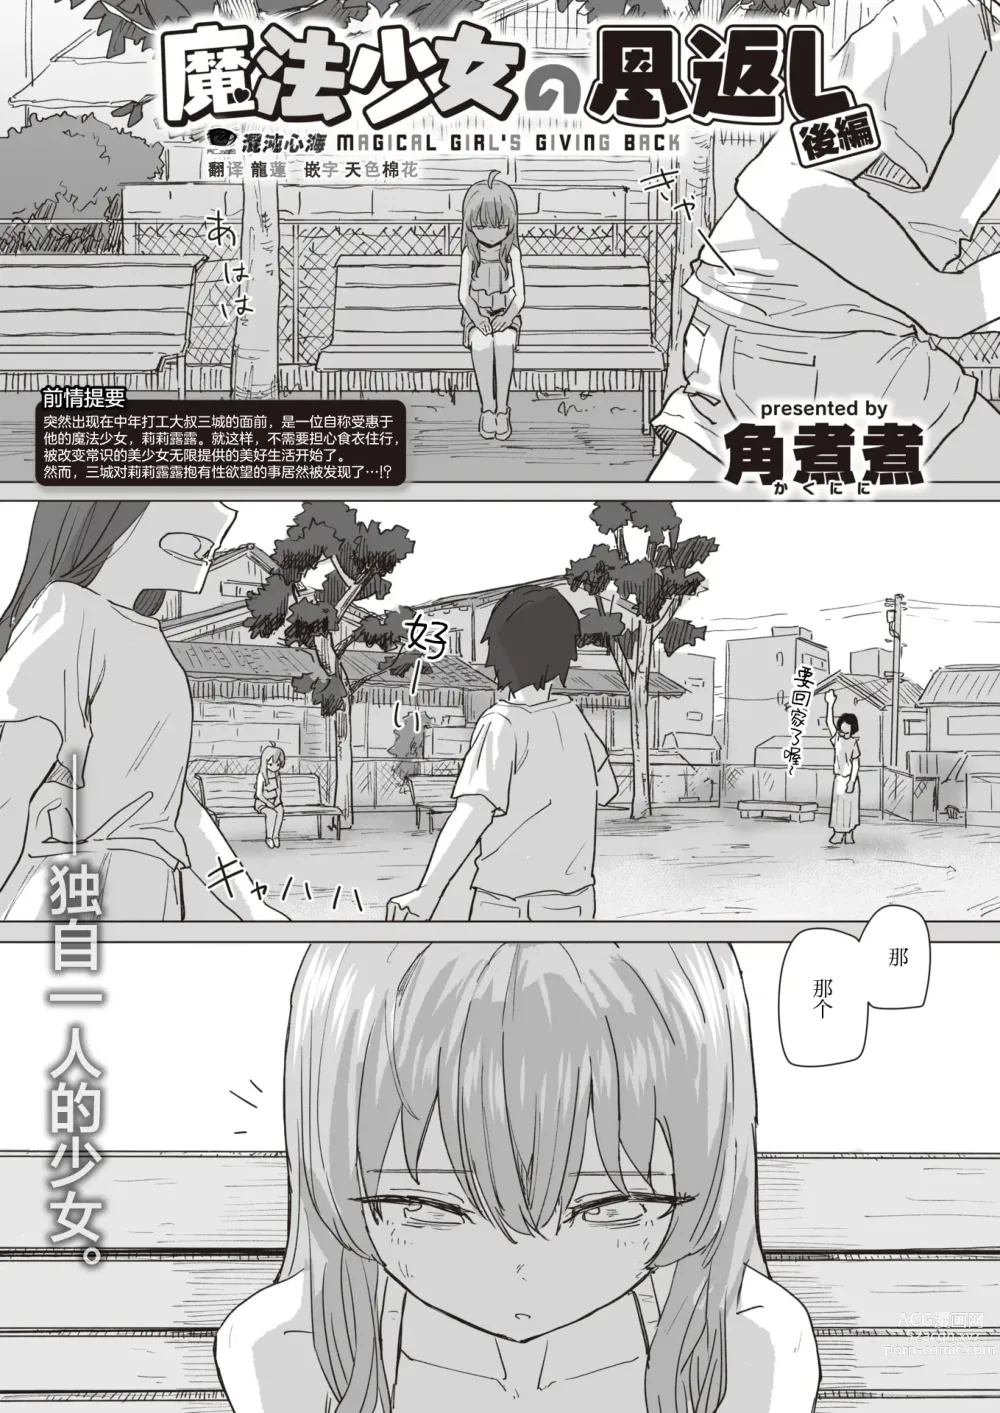 Page 1 of manga Mahou Shoujo no Ongaeshi Kouhen - Magical Girls Giving Back